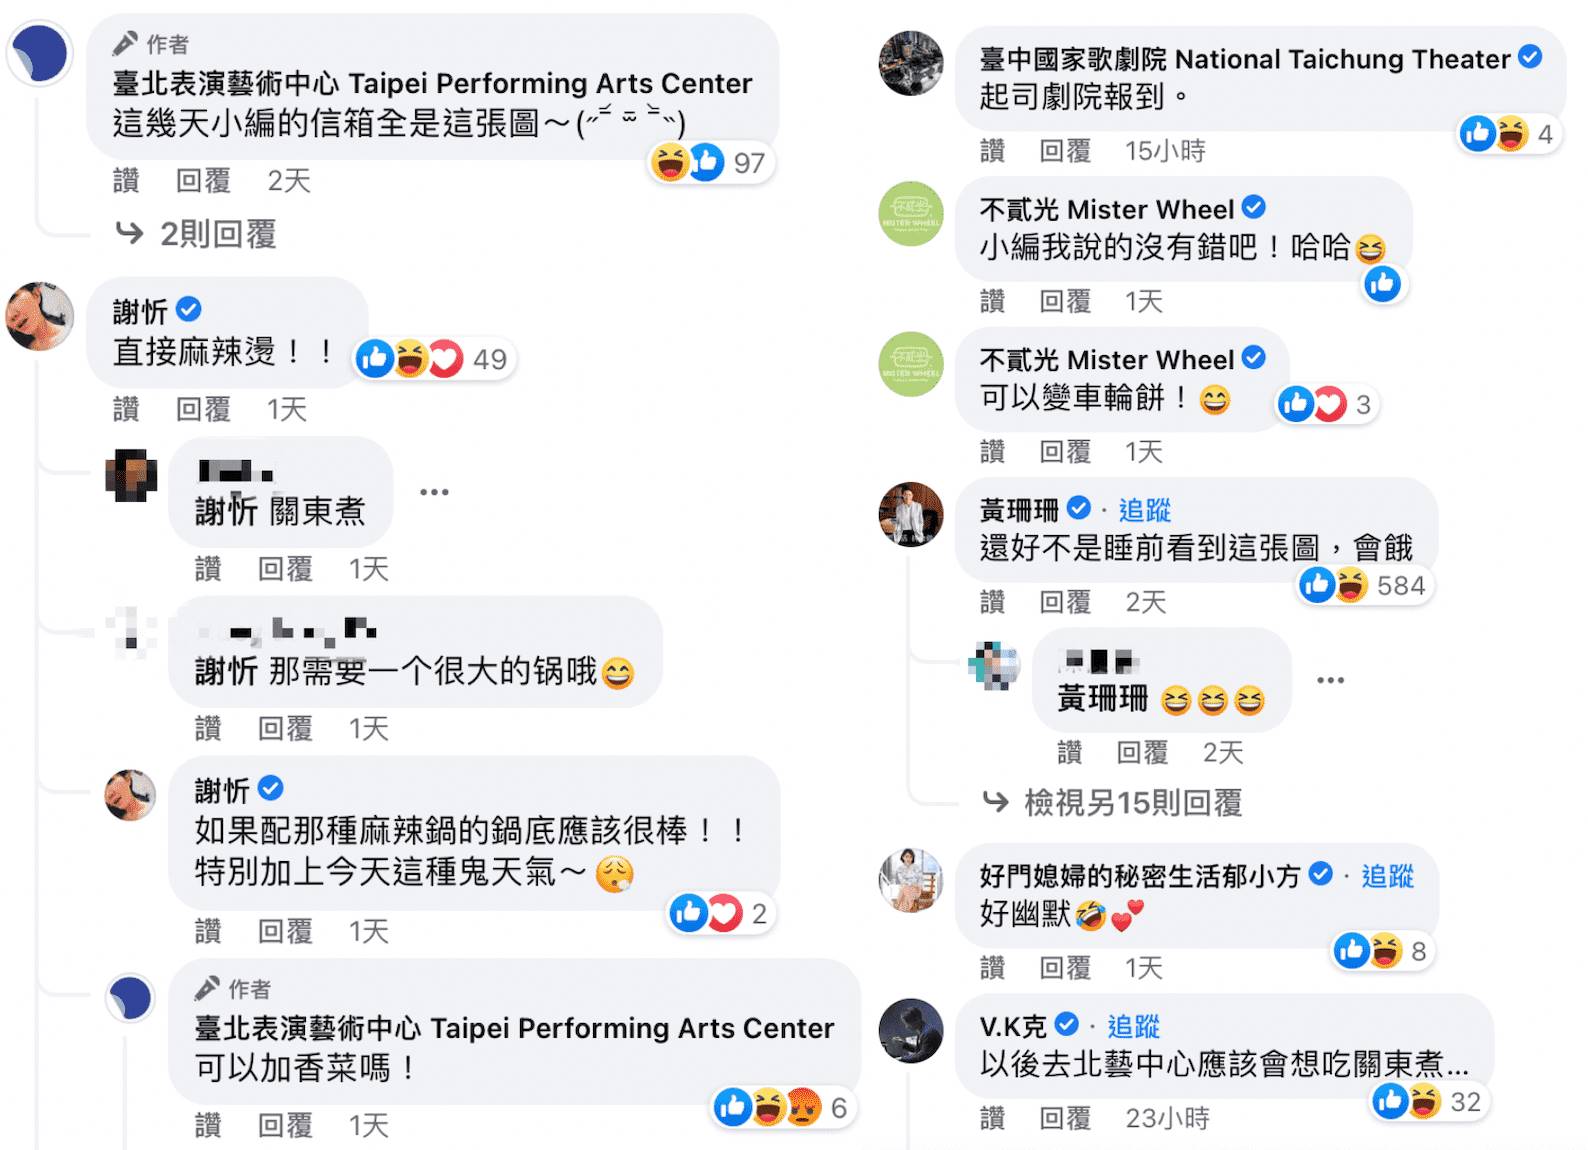 名人對臺北藝術表演中心建築調包留言